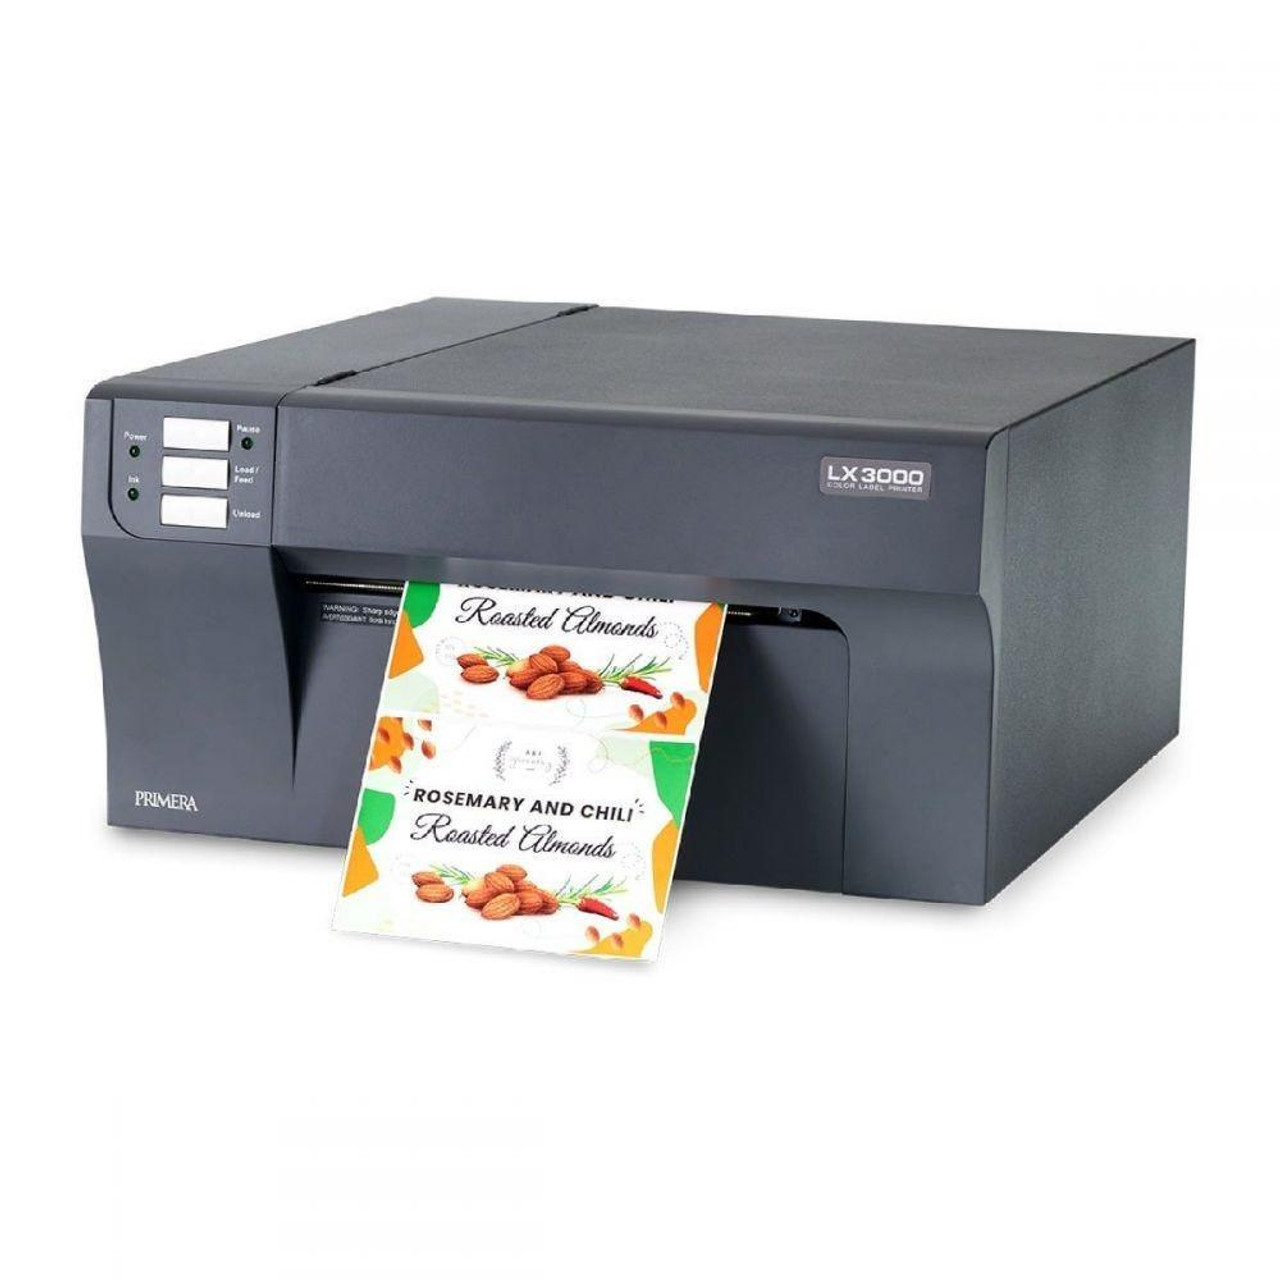 DTM PRINT LX3000e Color Label WLAN Label Dye-basierte separaten Printer mit Netzwerkfähig drei Dye Vollfarb-Drucktechnologie Tintentanks(CMY) Inkjet Printer